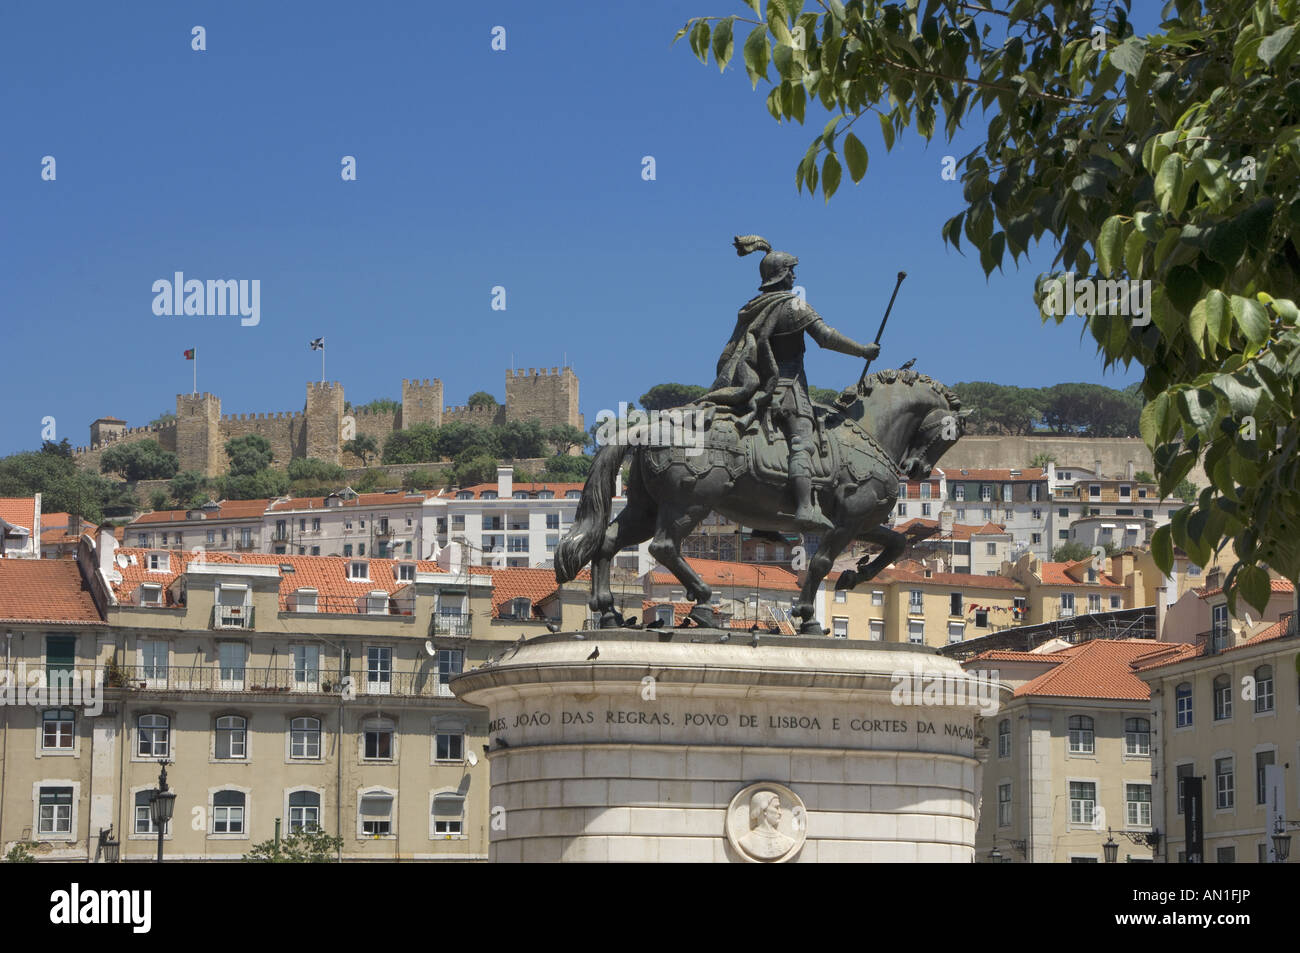 The equestrian statue of Dom Joao II in the Praca da Figueira square, central Lisbon, Portugal Stock Photo